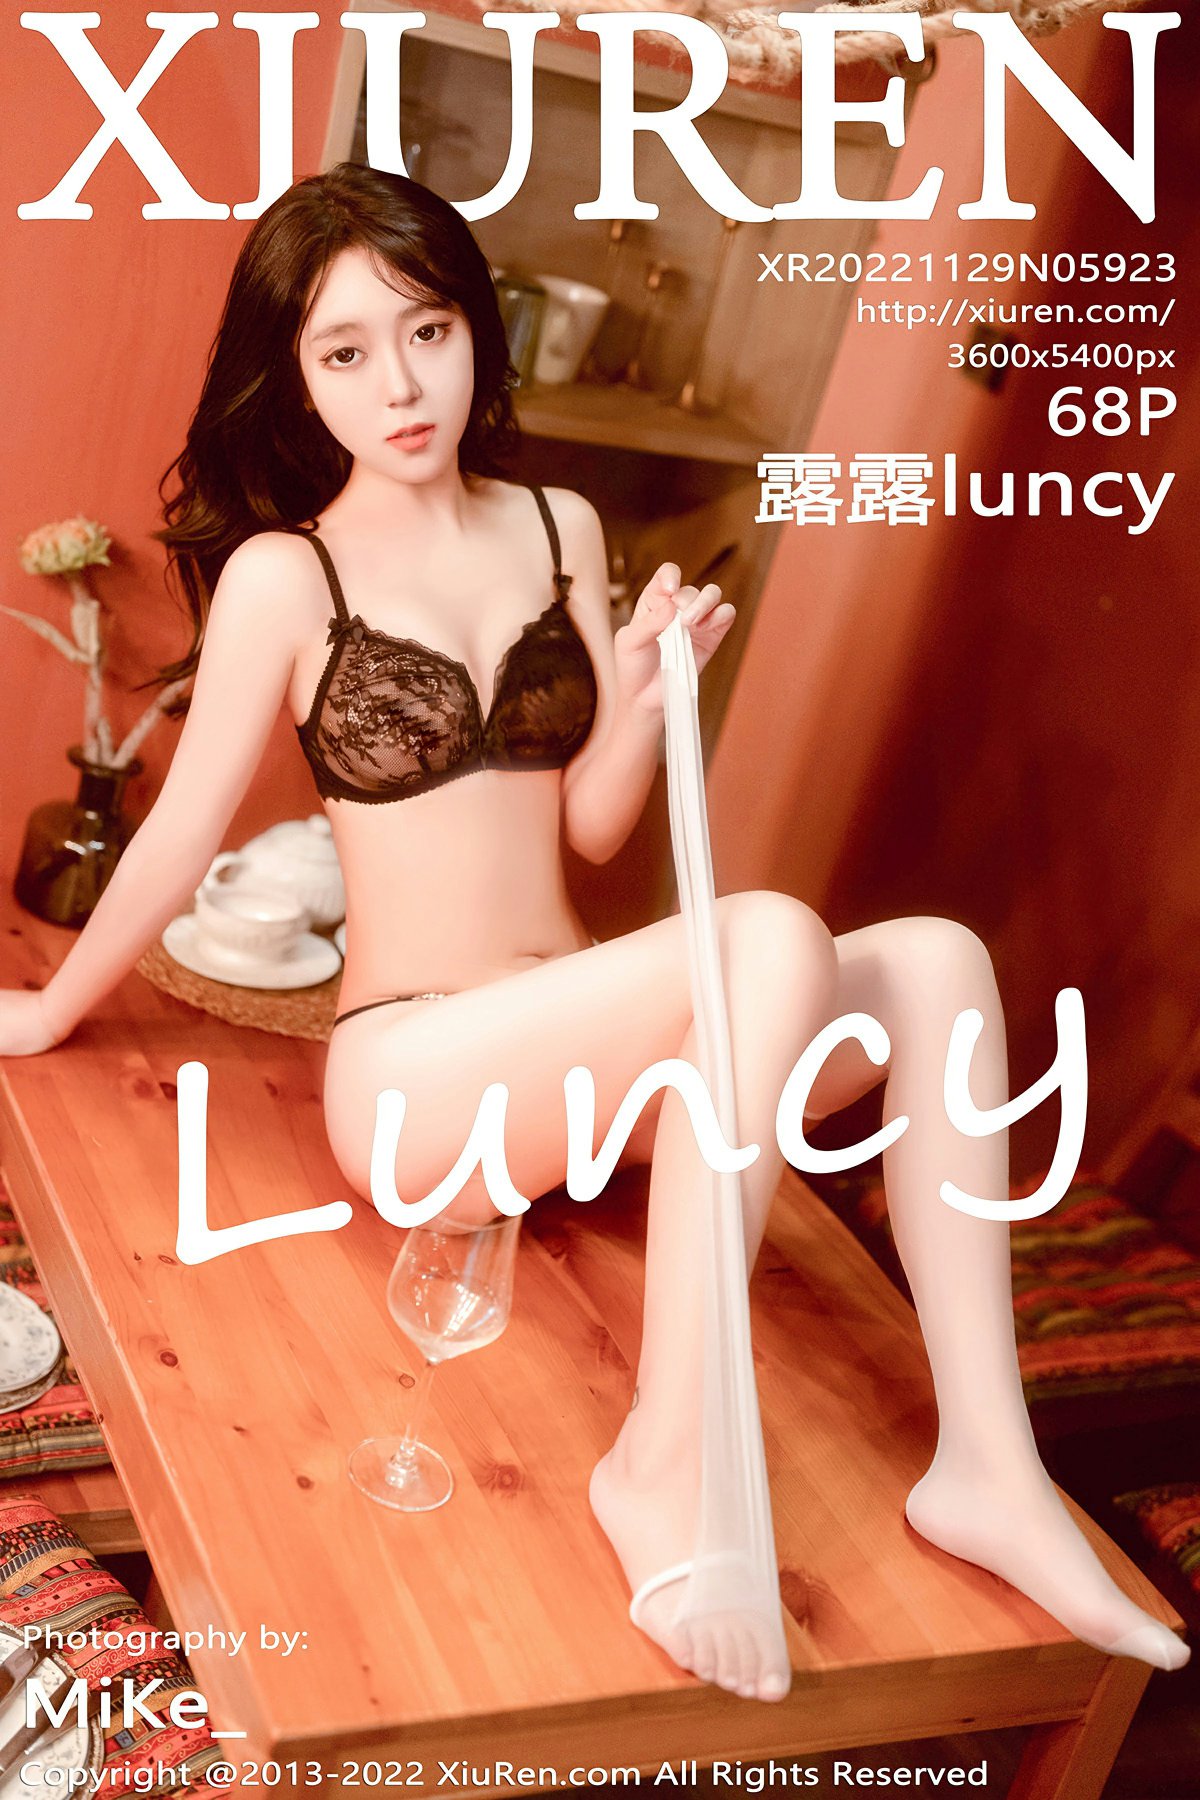 [XiuRen秀人网] 2022.11.29 No.5923 露露luncy